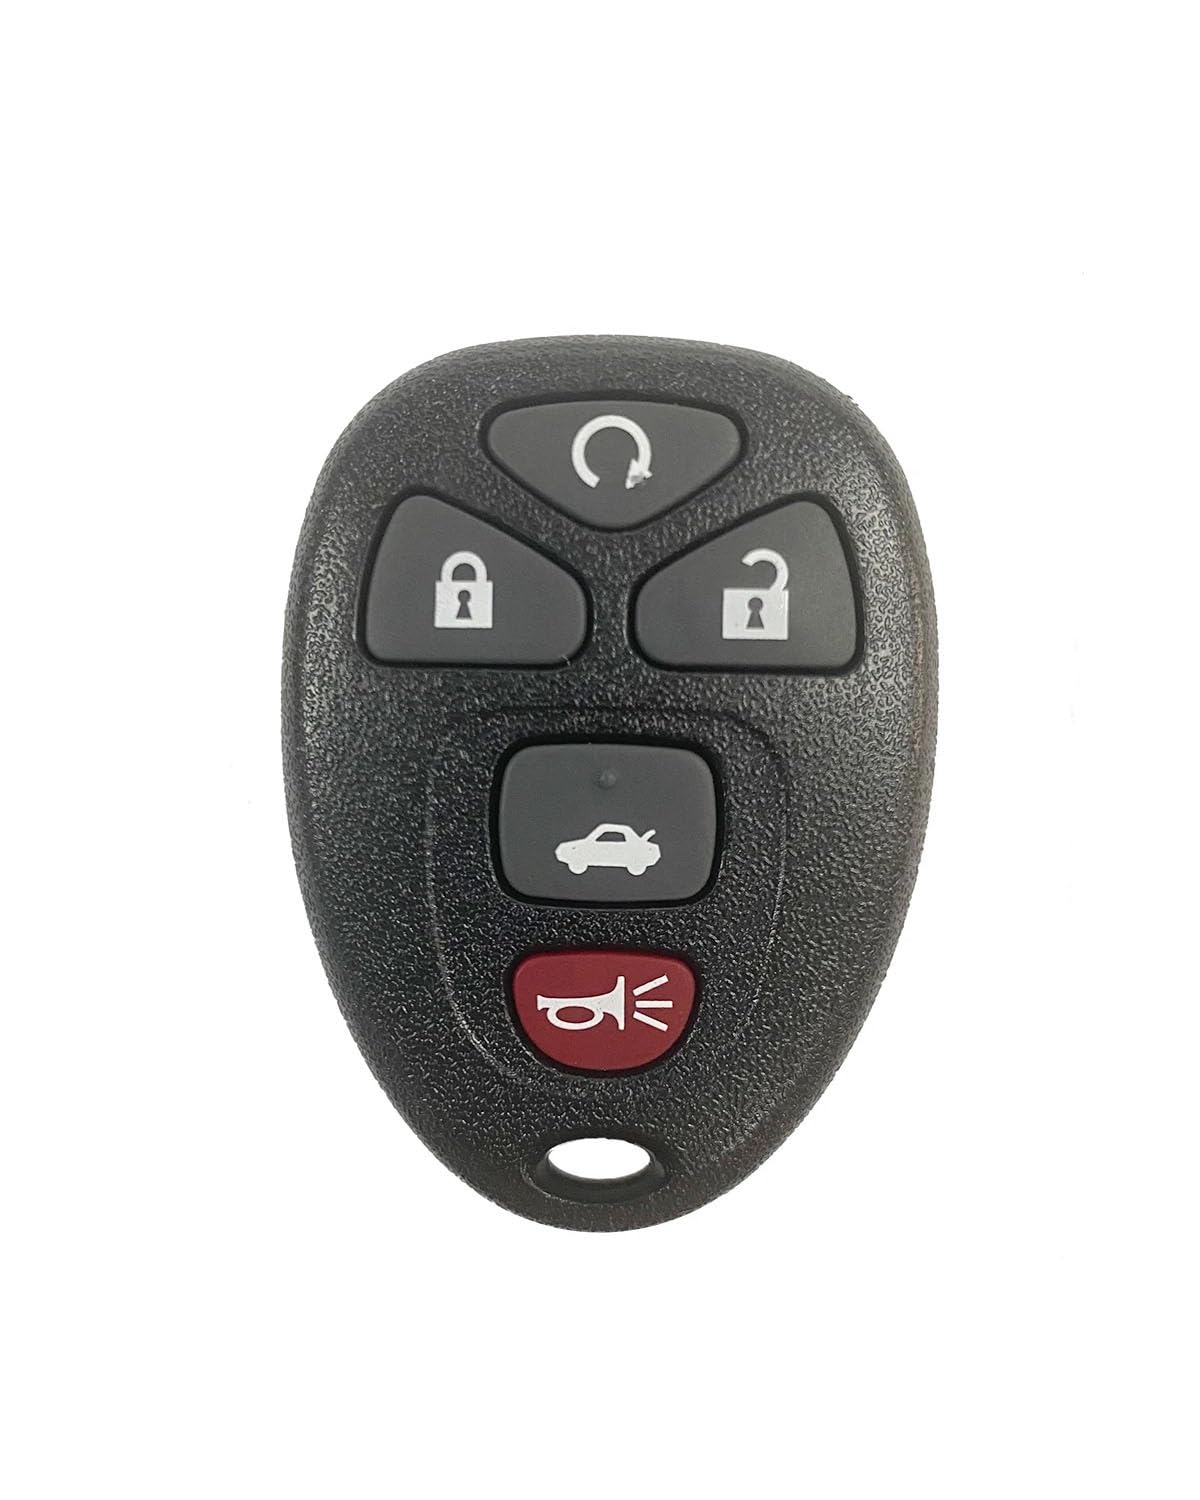 Funkschlüsseletui Fernbedienung Auto Eintrag Keyless Key Shell Ersatz Fall Fob Für GMC Für Buick Für Malibu Autoschlüsseletui(Type4) von MXDDWLKJ